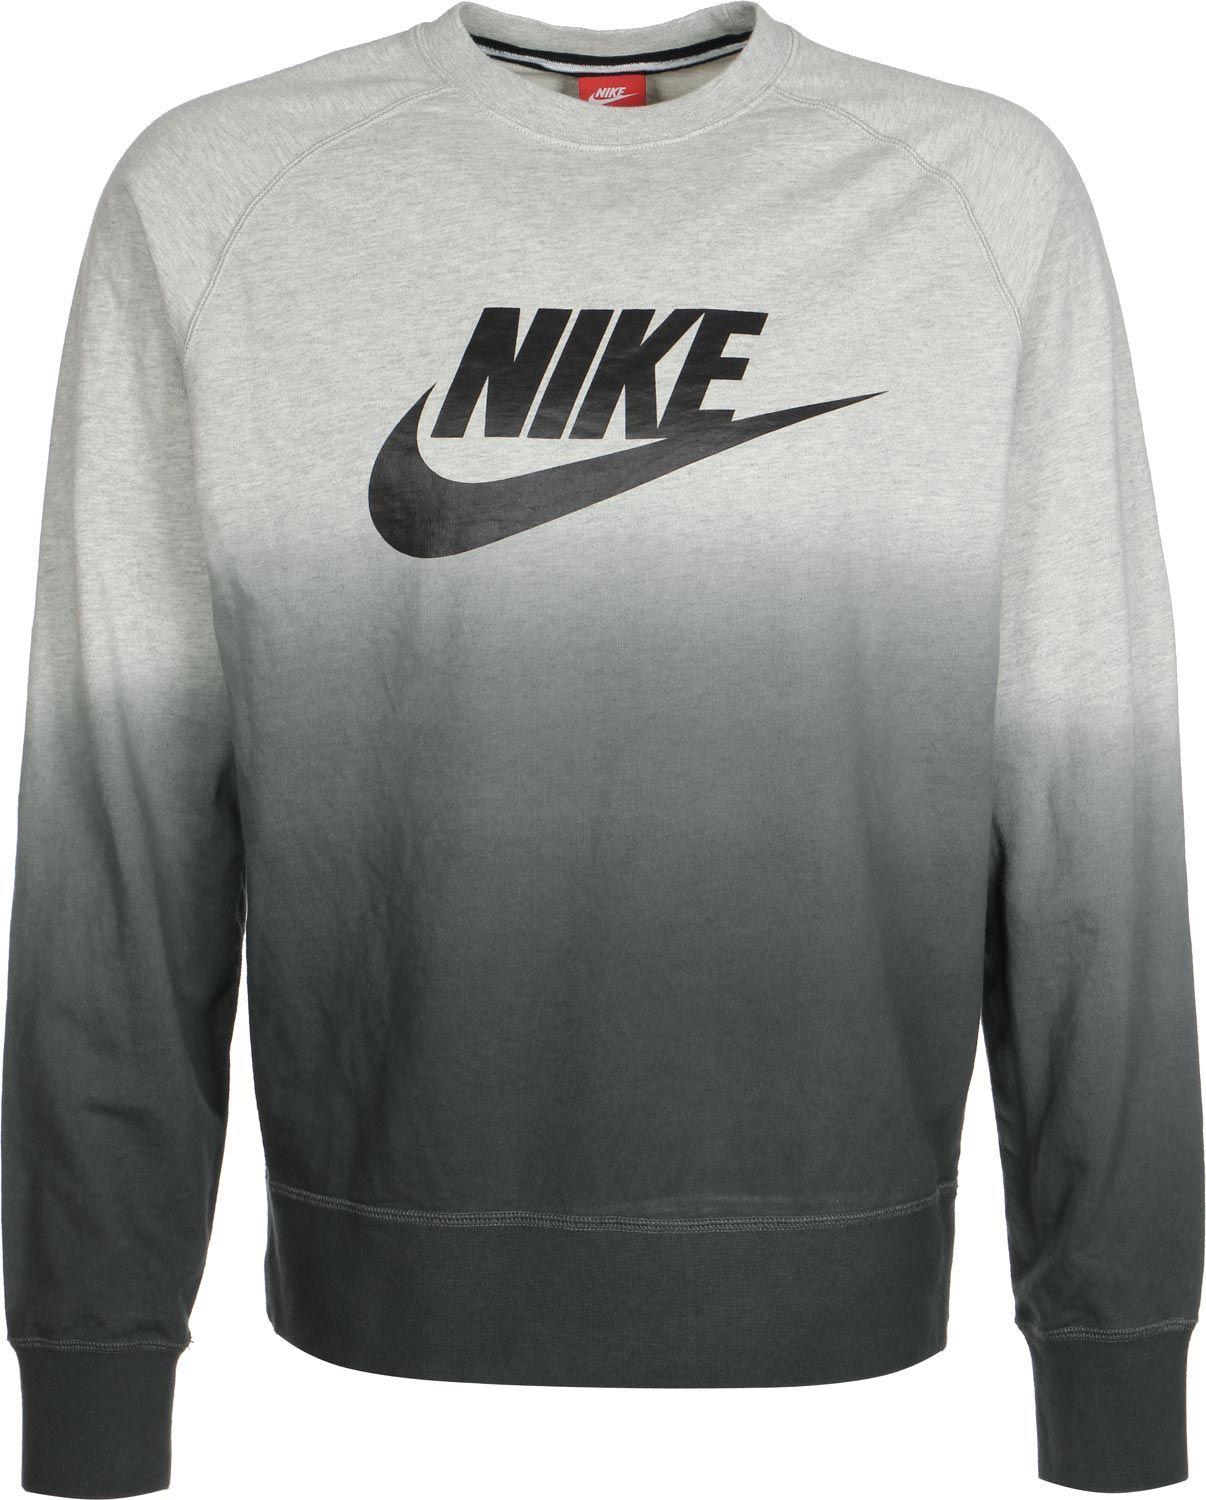 Fade Nike Logo - Nike AW77 FT Crew Fade Sweater Grey Heather